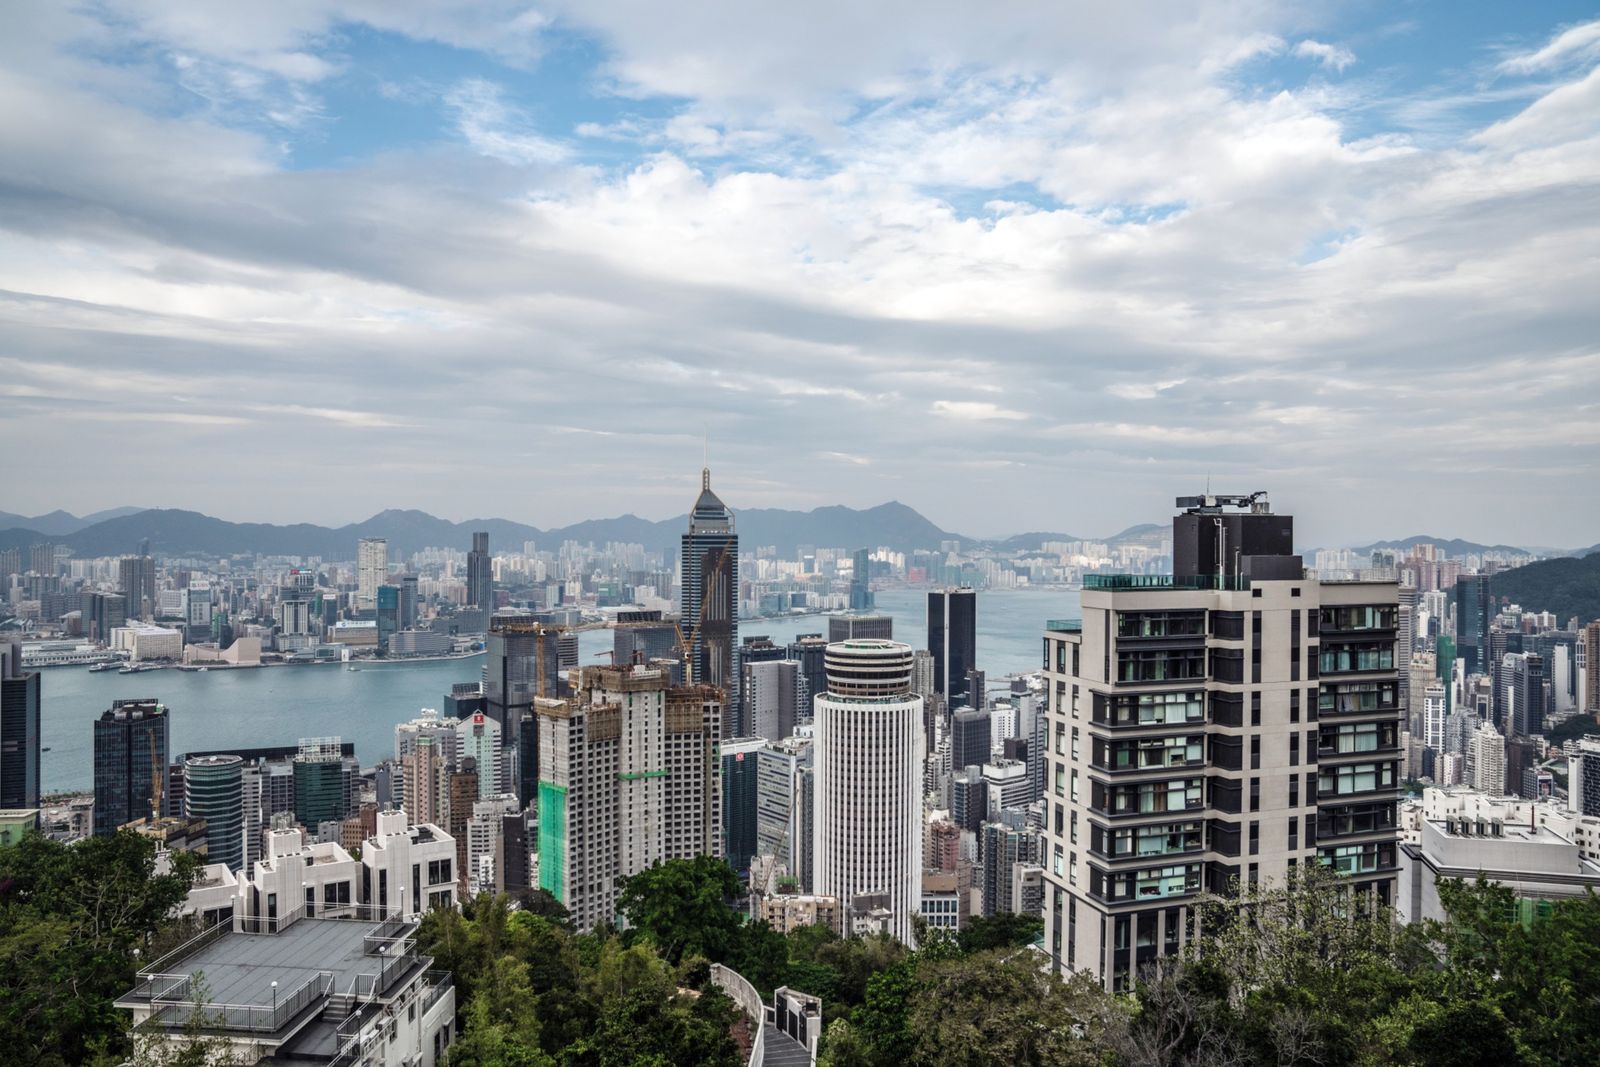 هونغ كونغ تجمع 5.8 مليار دولار في أكبر إصدار سندات خضراء عالمياً